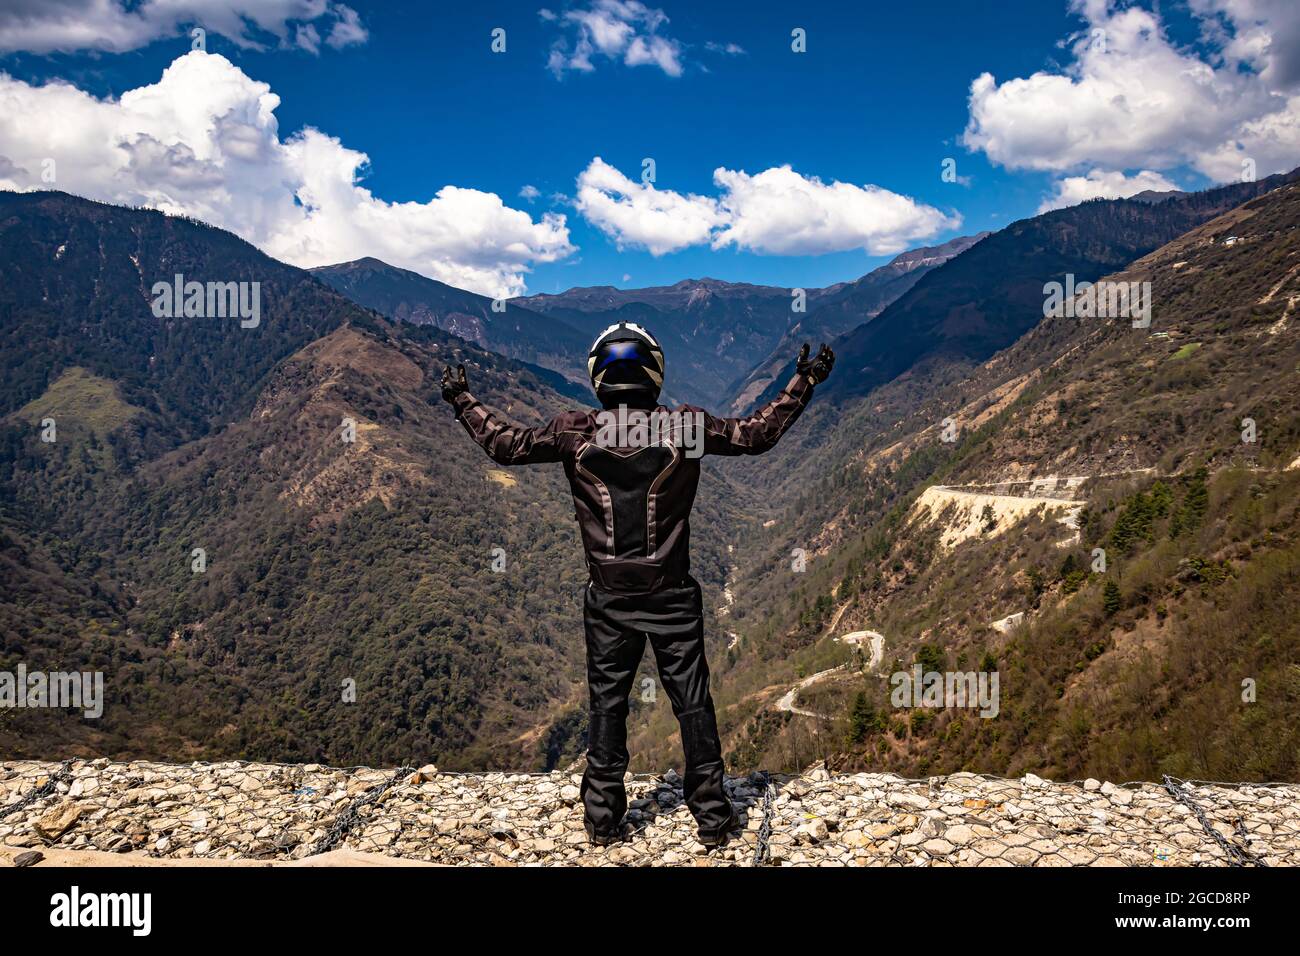 Biker, die Sicherheitsvorrichtungen an der Bergspitze mit hellblauem Himmel am Tag tragen, werden am sela-Pass tawang arunachal pradesh india aufgenommen. Stockfoto